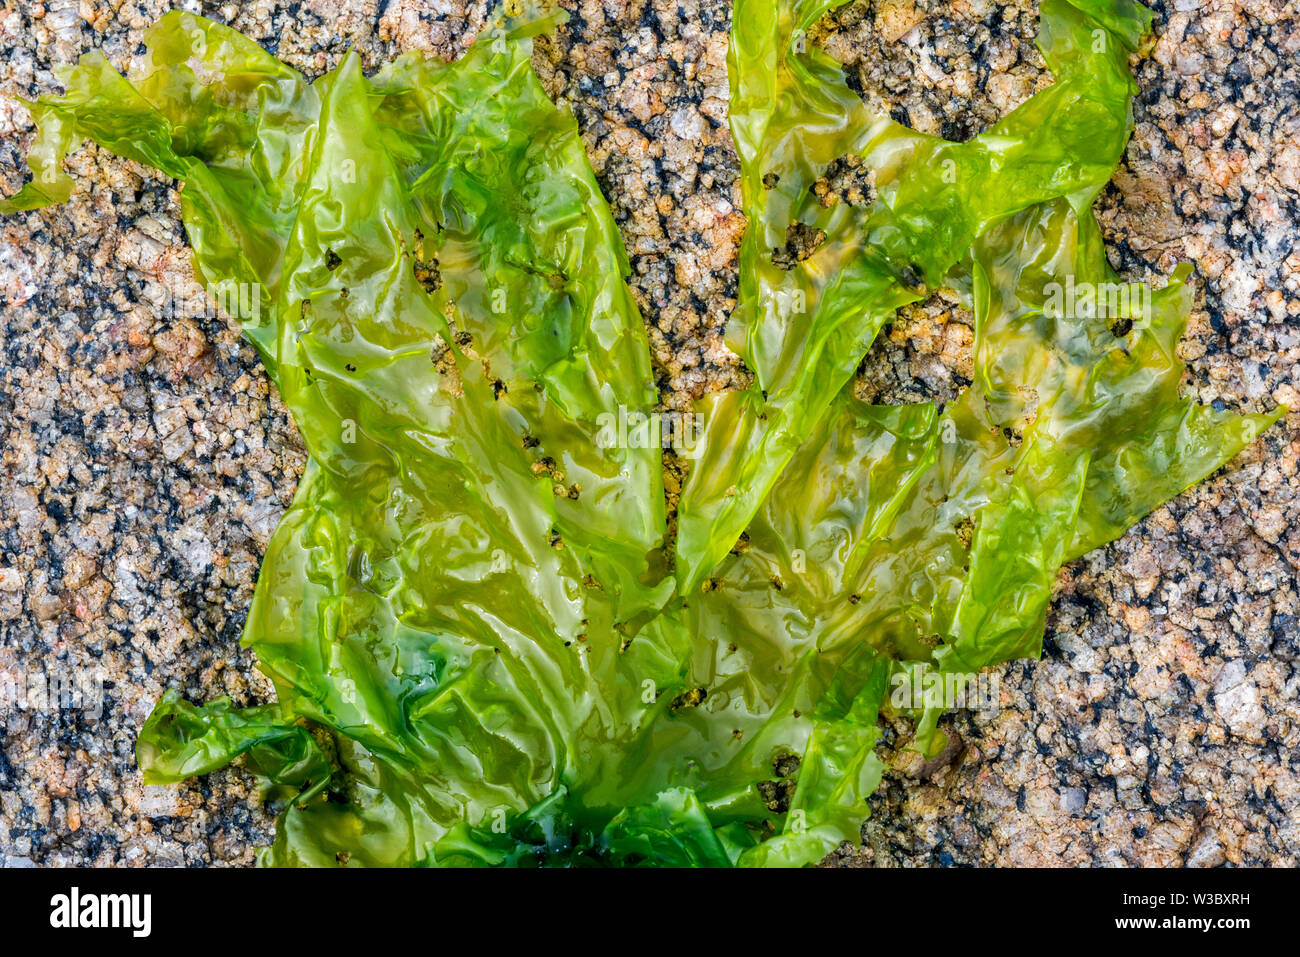 La lechuga de mar (Ulva lactuca) alga verde comestible arrastrado en la playa rocosa Foto de stock